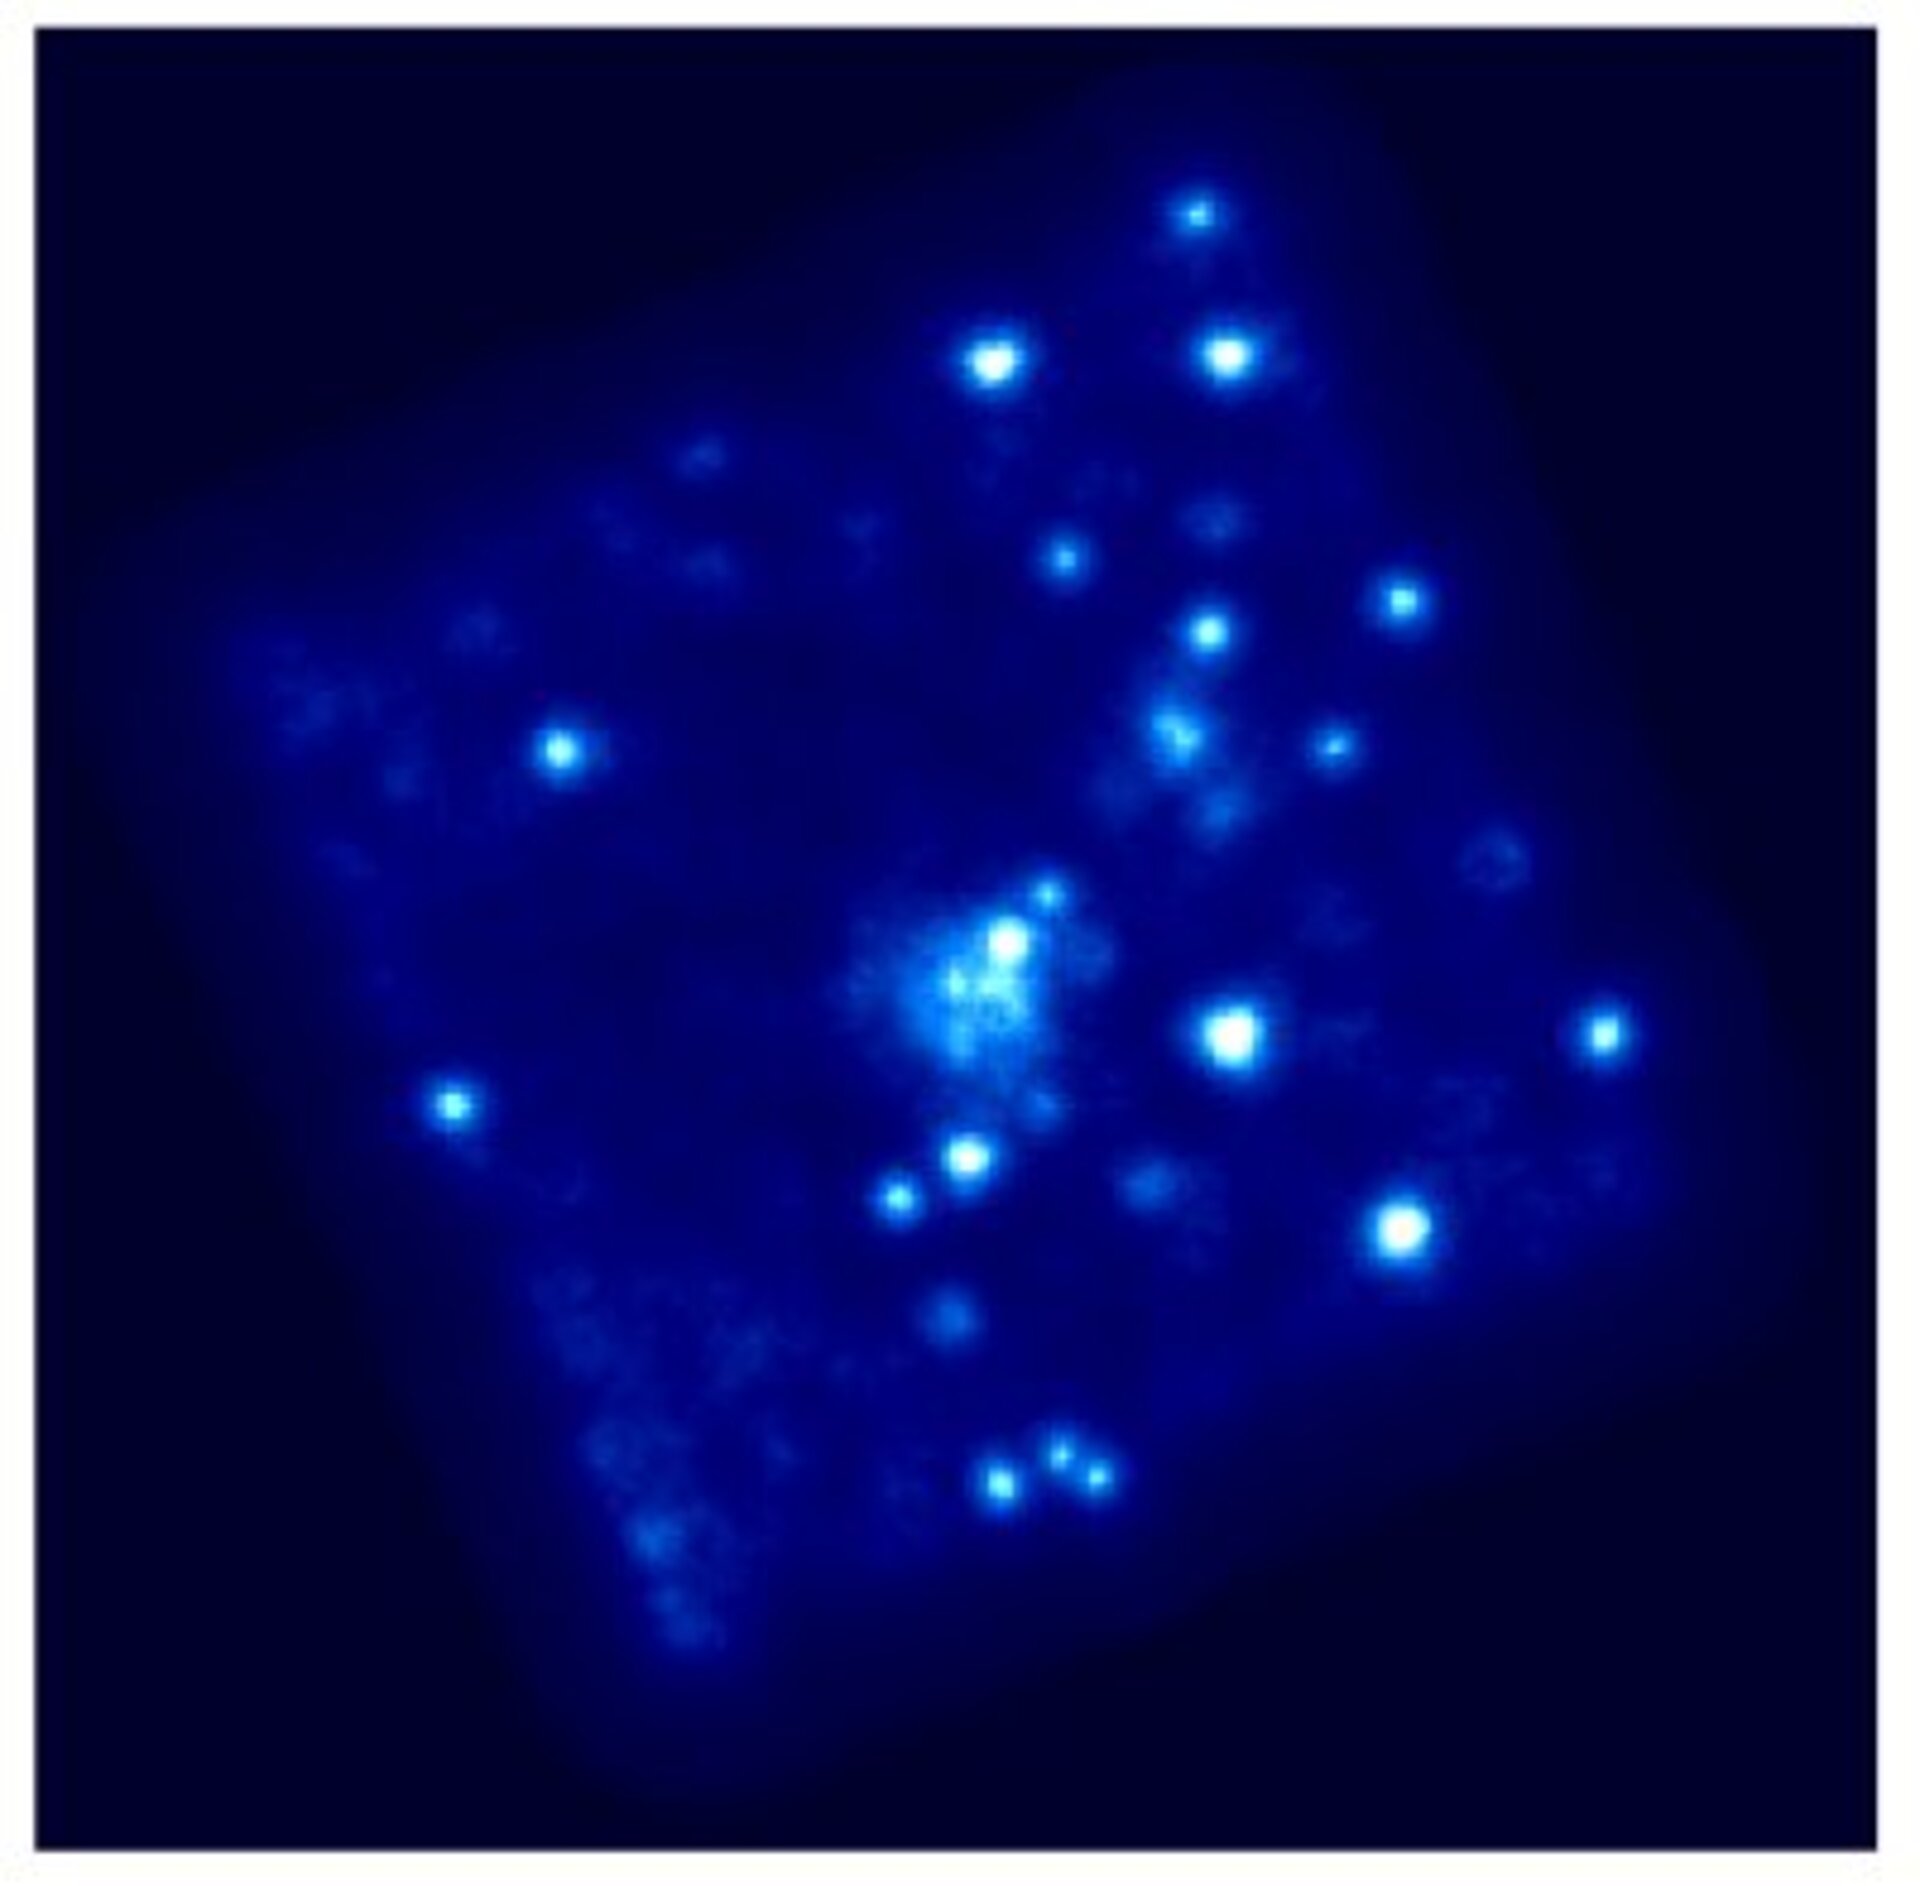 Het wolkje in het midden van deze afbeelding is een van de clusters van melkwegstelsels die door XMM-Newton werd bekeken